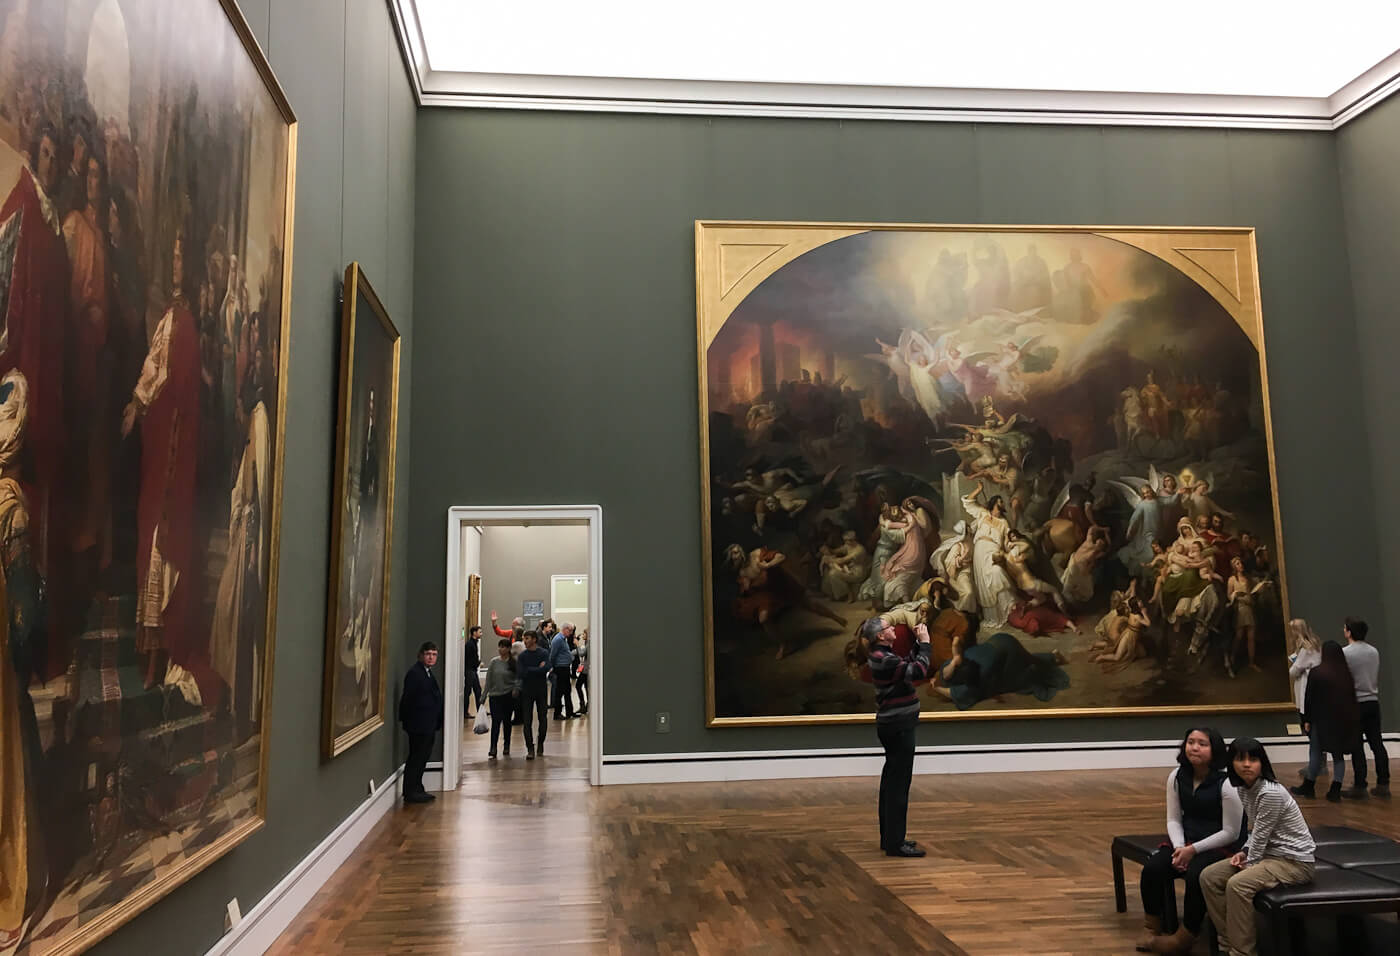 Новая пинакотека в мюнхене – крупнейшая в мире коллекция европейского искусства xviii-xx веков